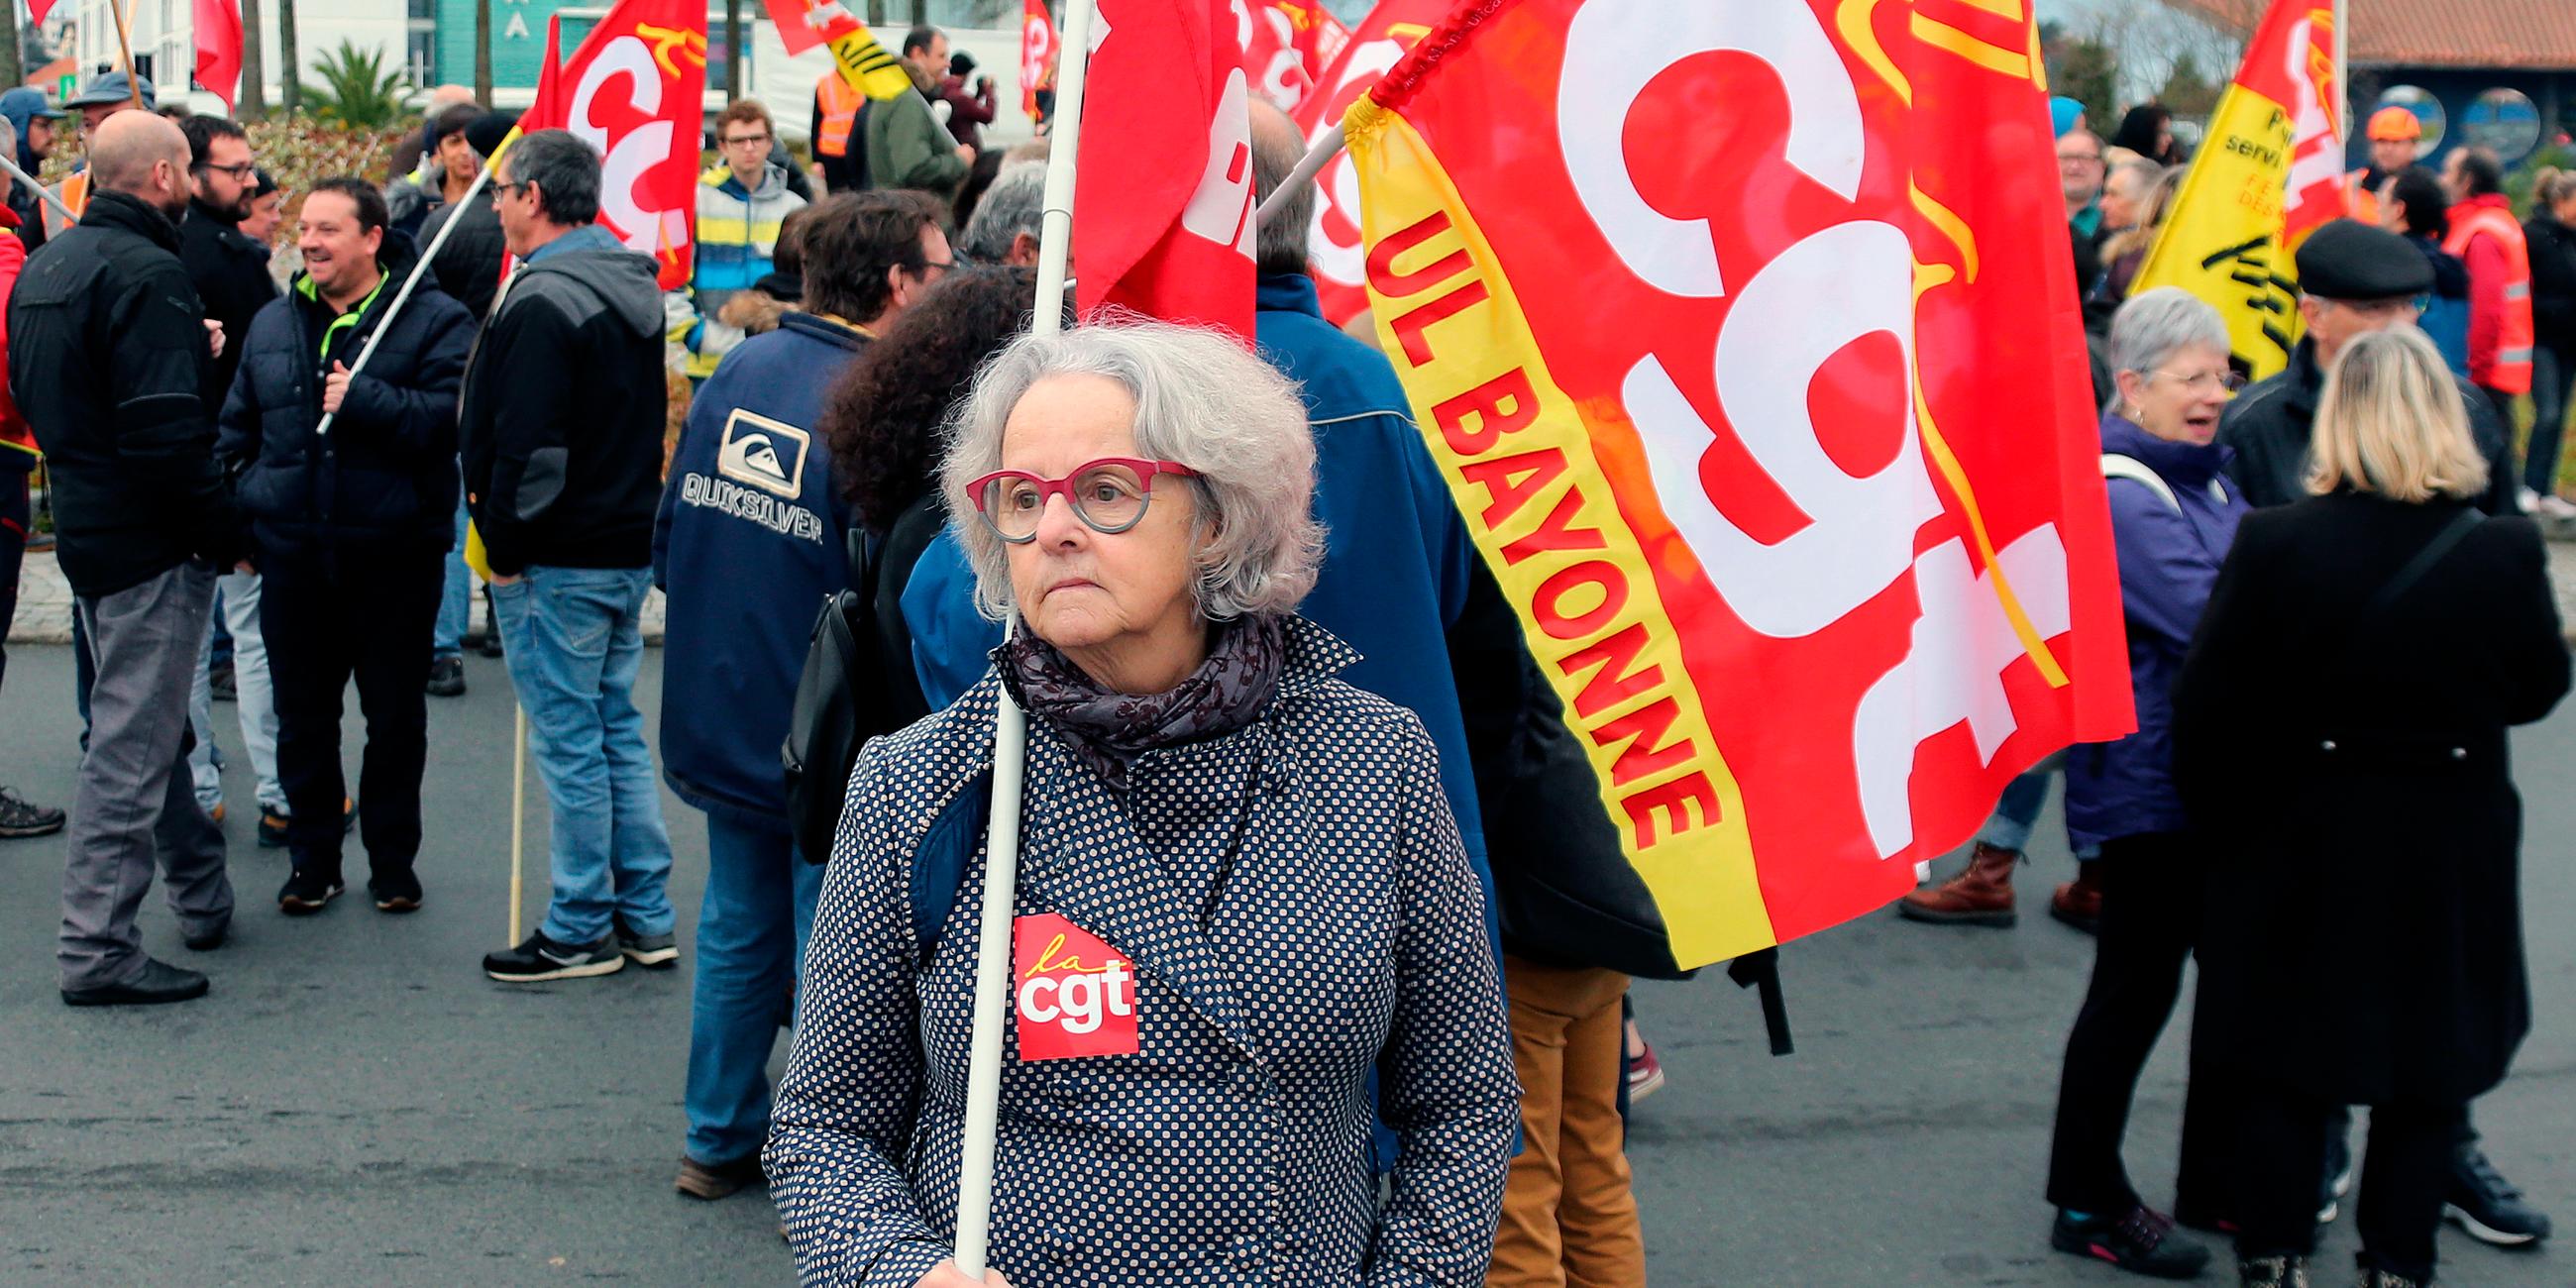 Frankreich, Anglet: Eine Demonstrantin trägt während eines Protestes eine Flagge des Gewerkschaftsbundes cgt. Archivbild